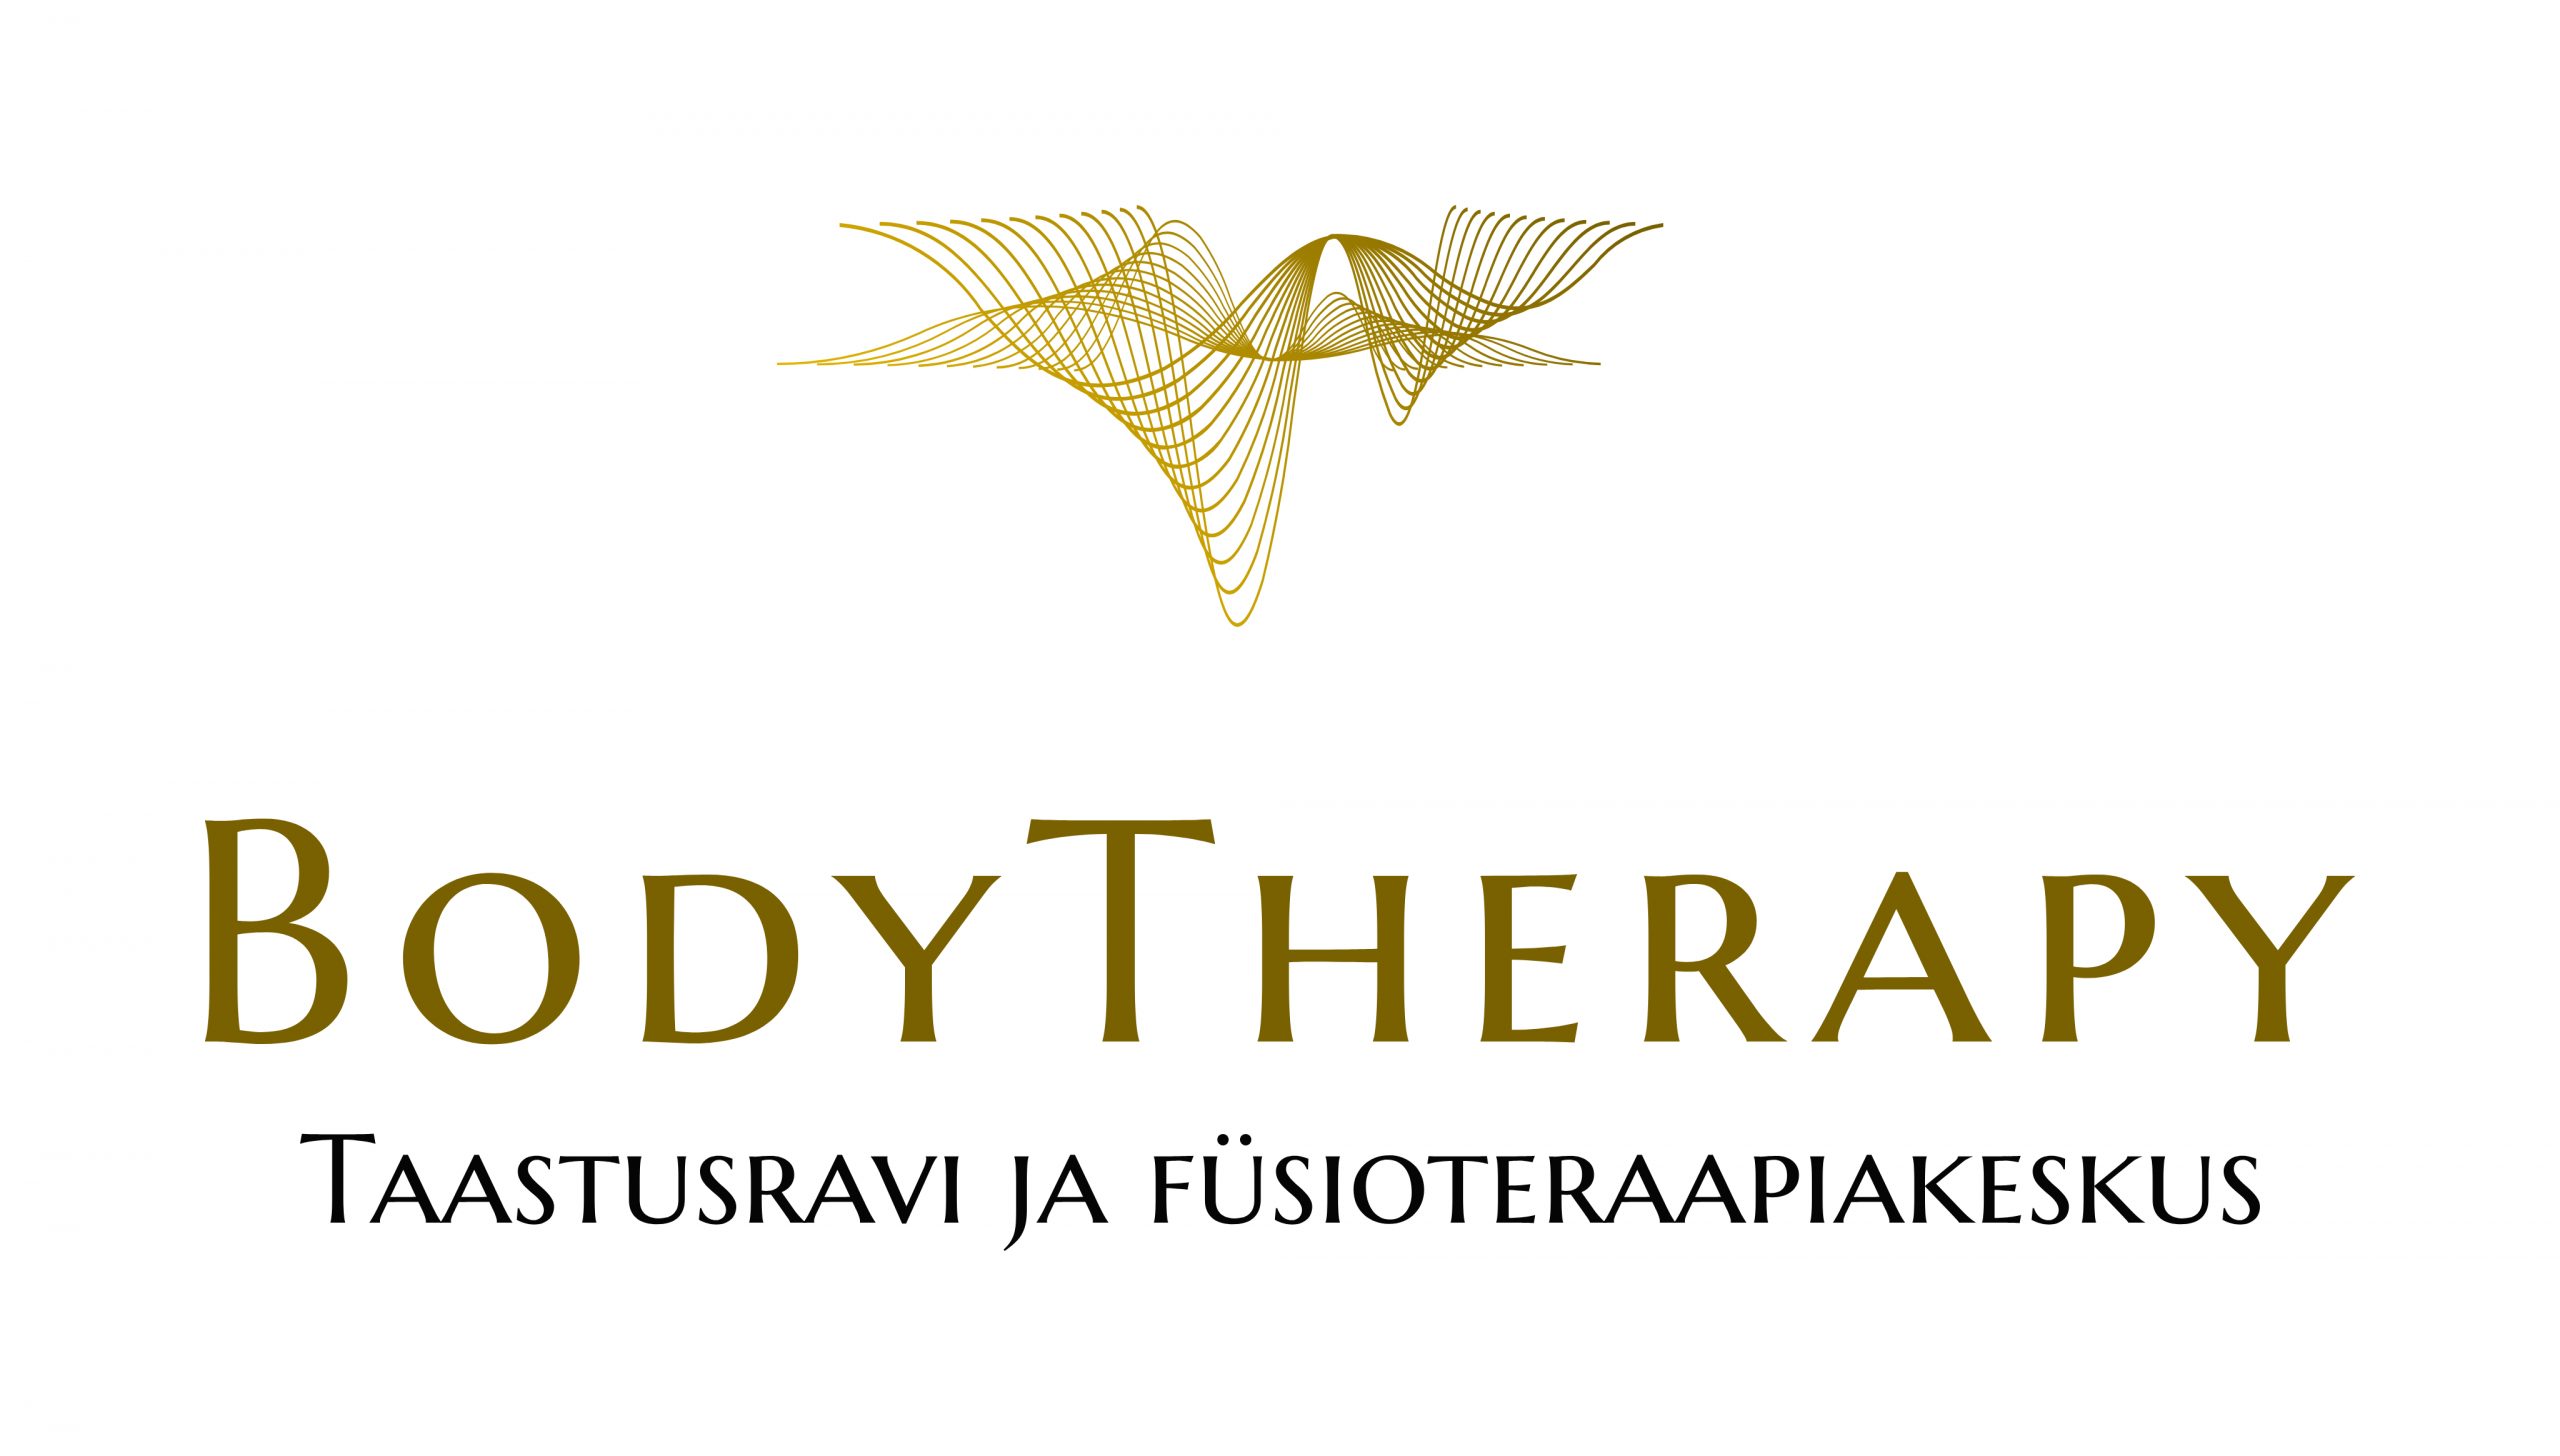 Bodytherapy